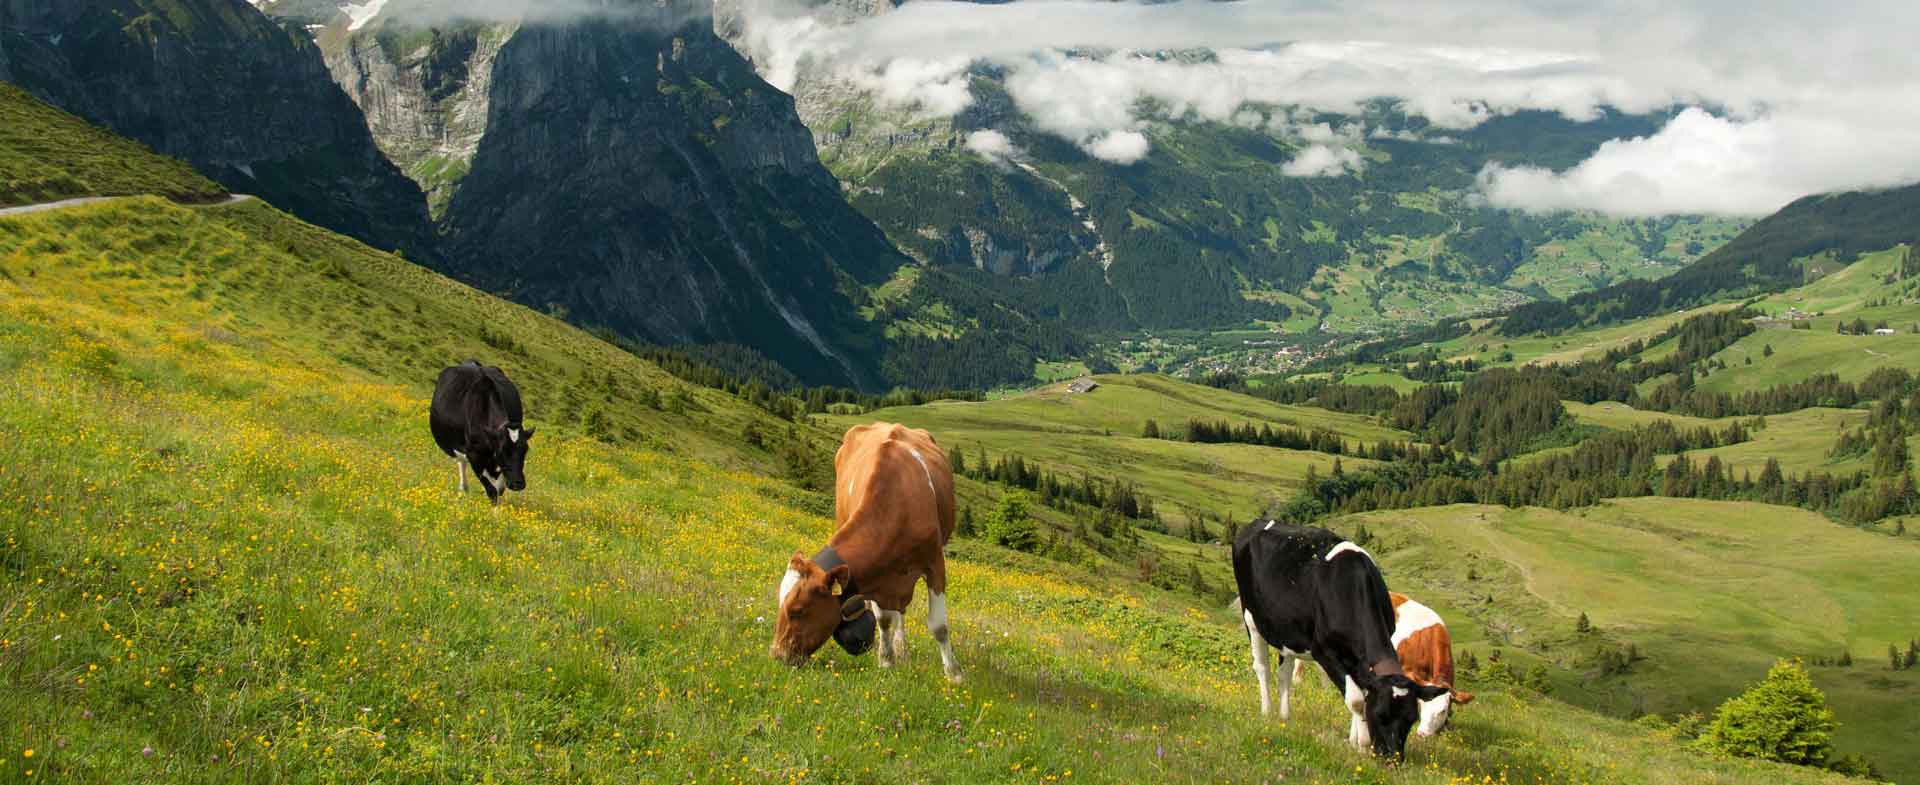 Γενικό image της ιστοσελίδας της Alpiland με αγελάδες που βόσκουν σε πεδιάδες.